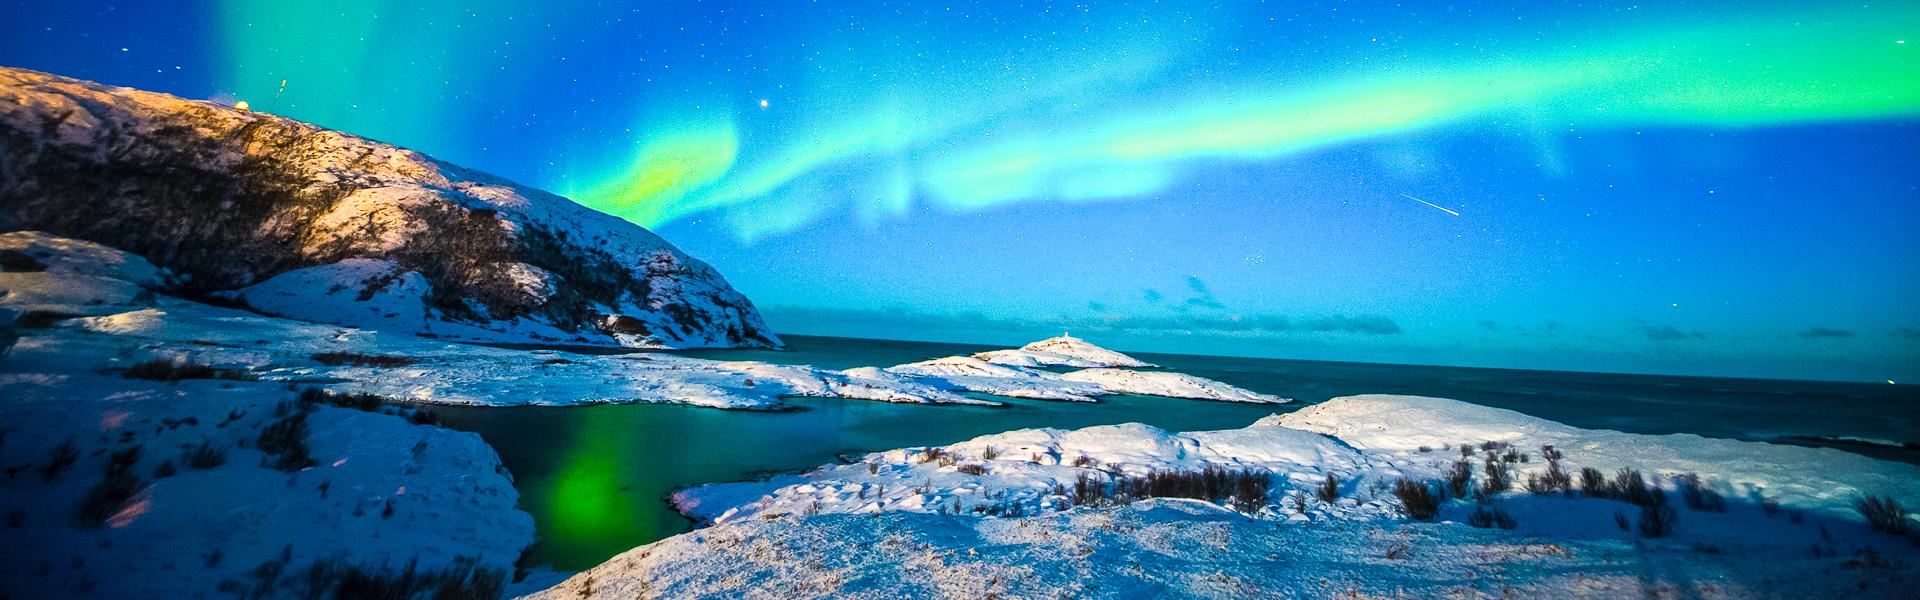 Polarlichter bei Troms |  Lightscape, Unsplash / Chamleon